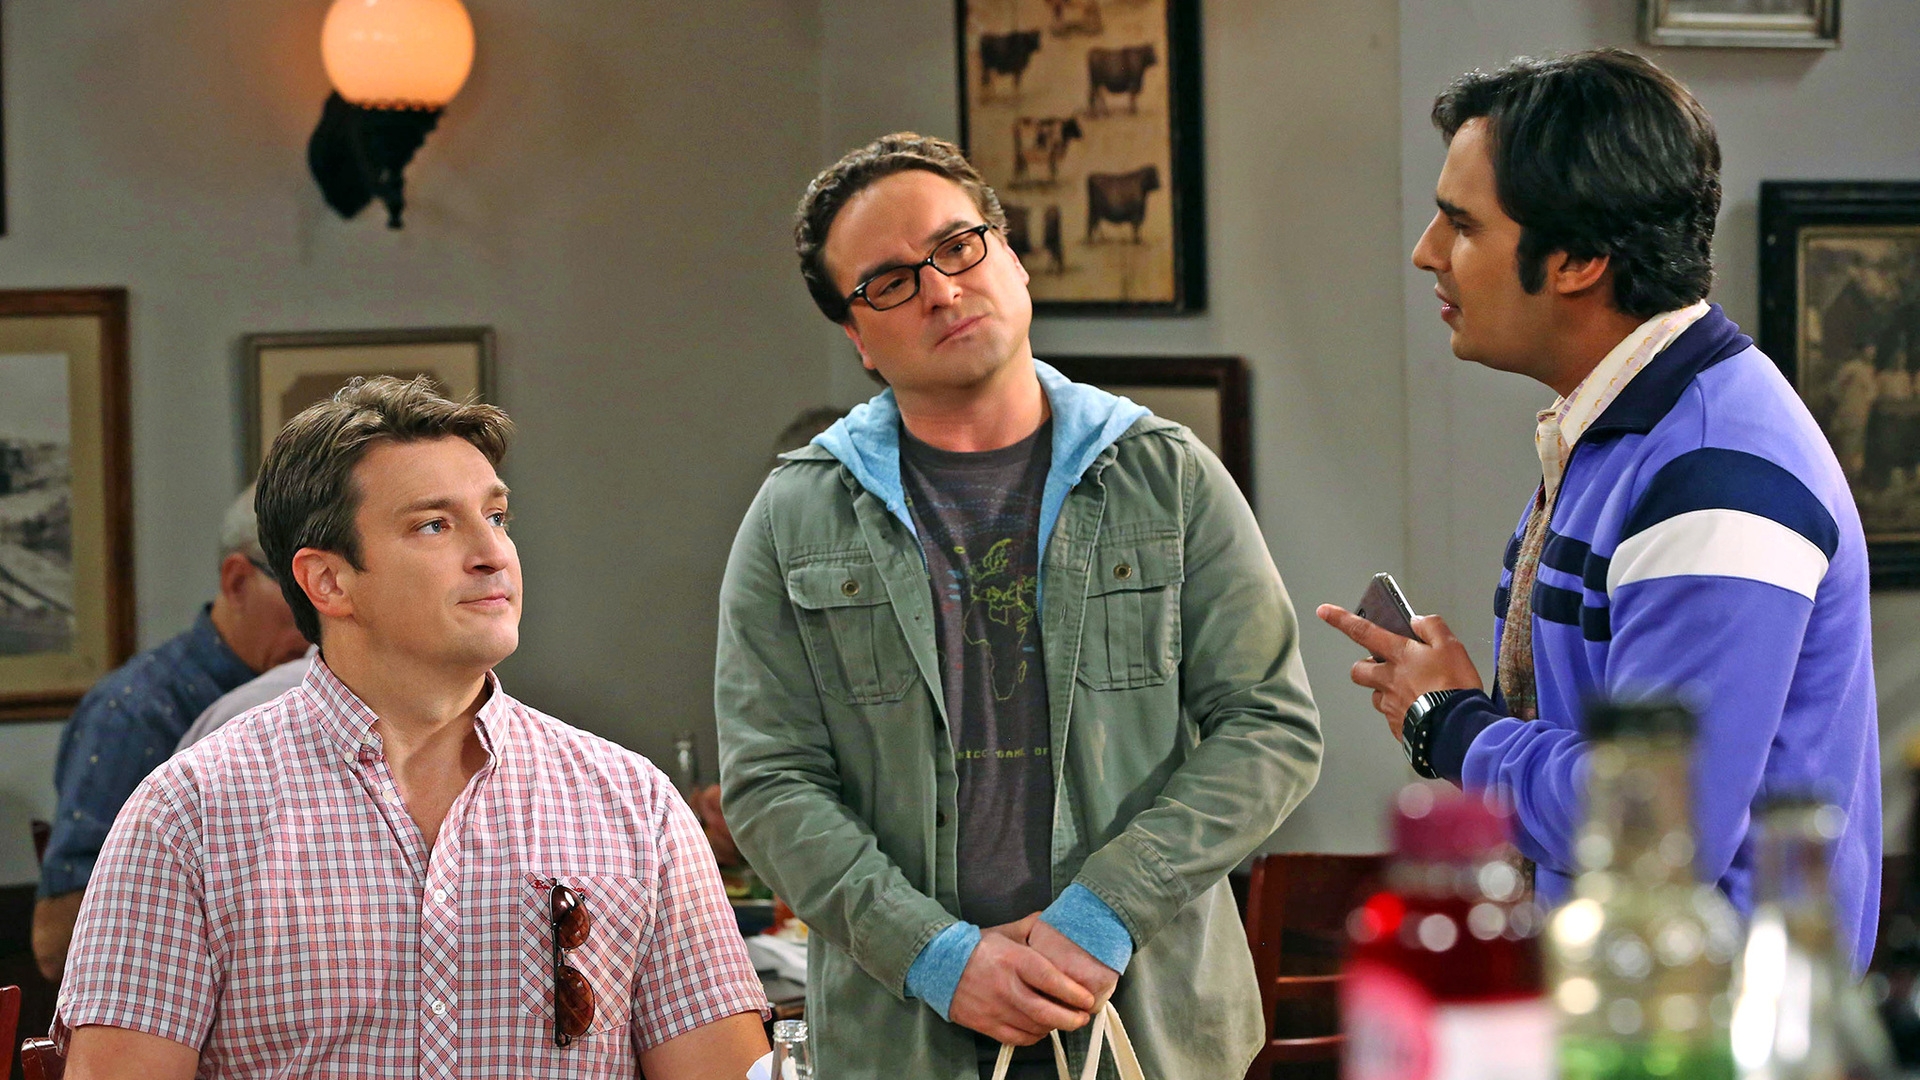 The Big Bang Theory Leonard, Raj and Nathan for 1920 x 1080 HDTV 1080p resolution